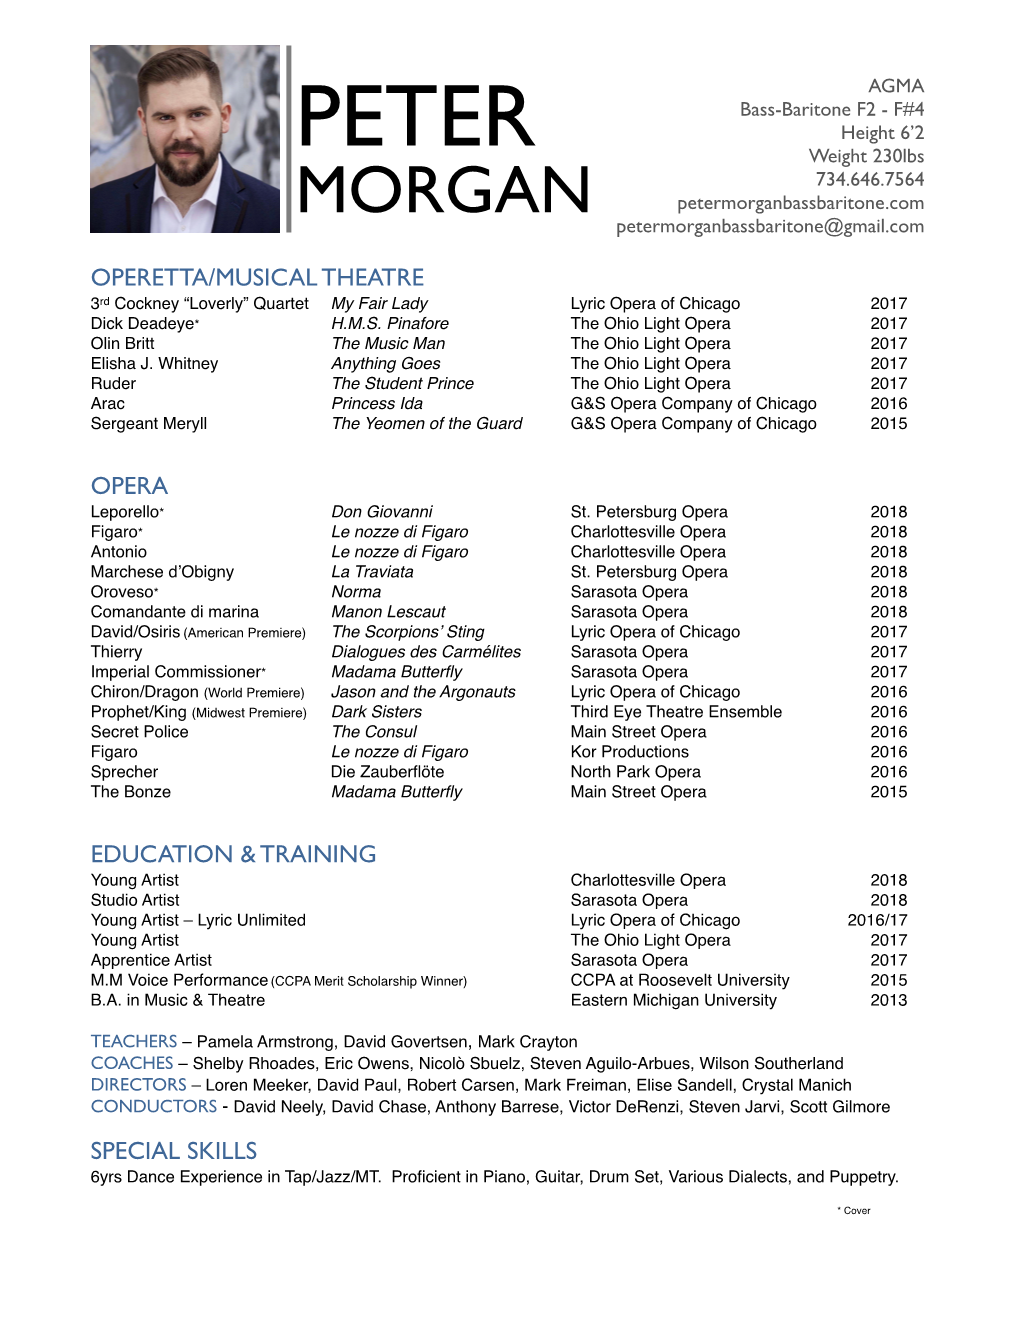 Peter Morgan MT Resume Edit 2018